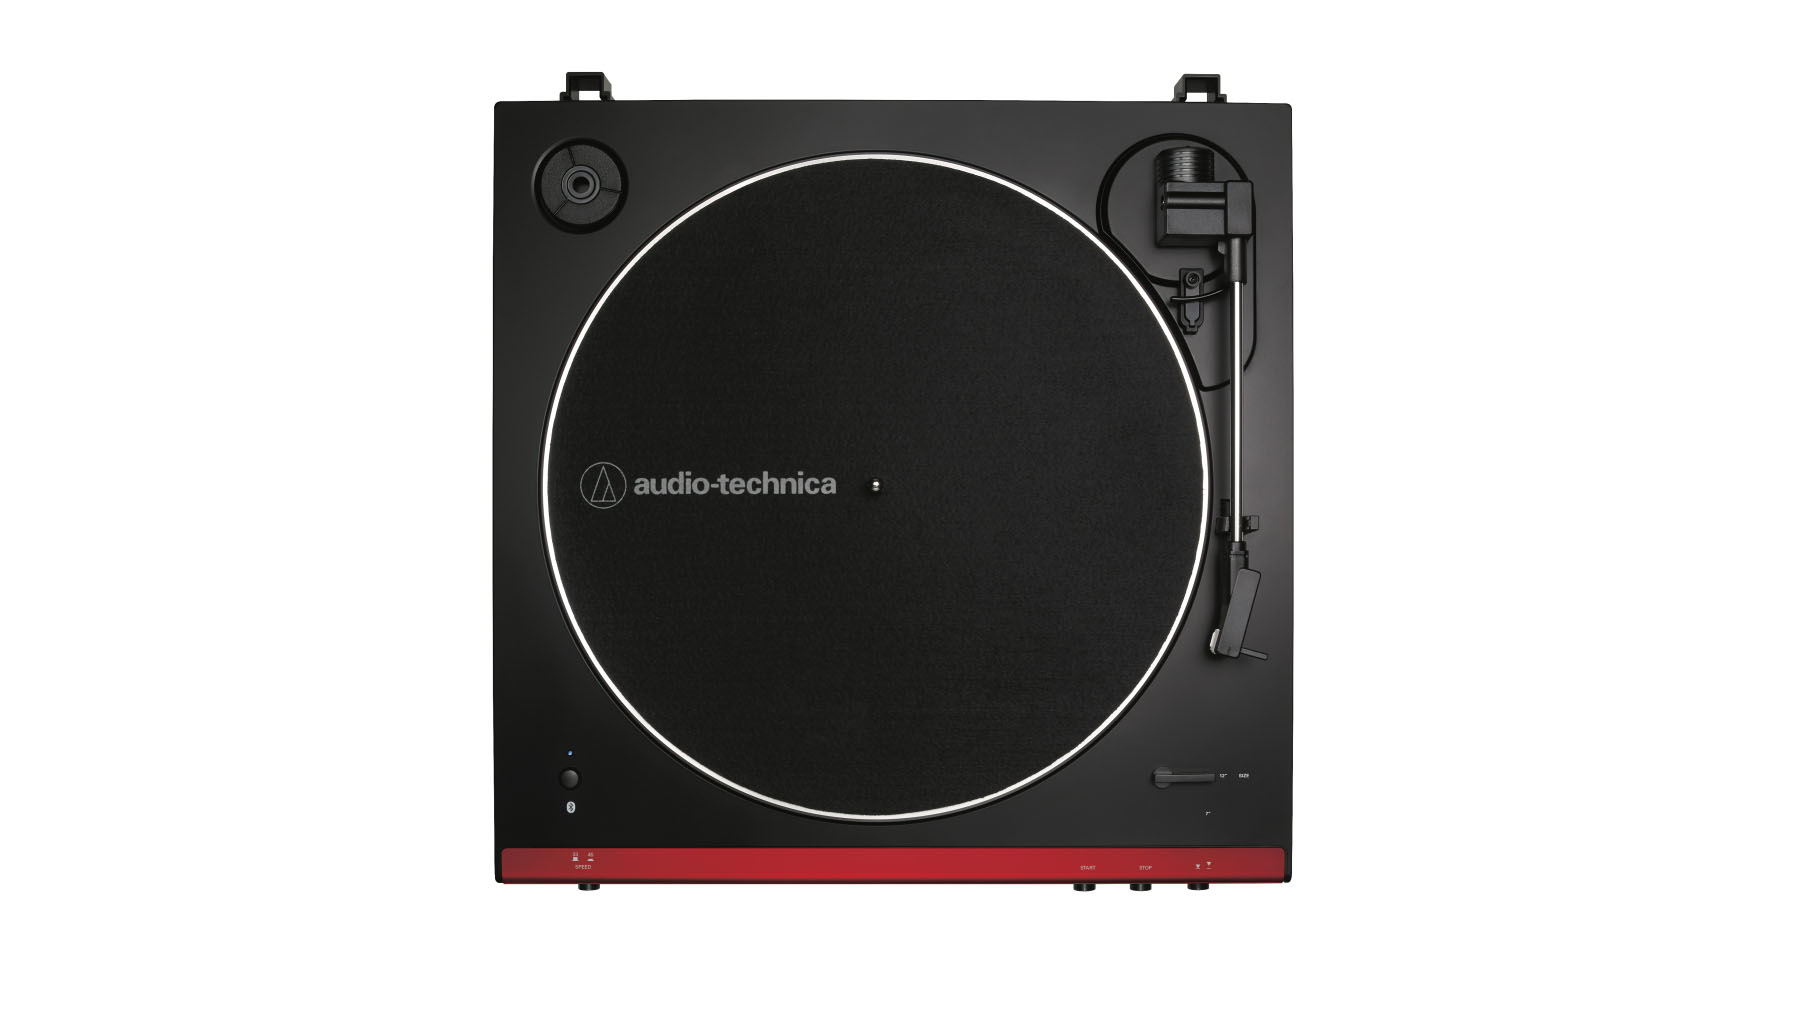 Audio-Technica unveils four new LP60 turntables to suit all vinyl fans